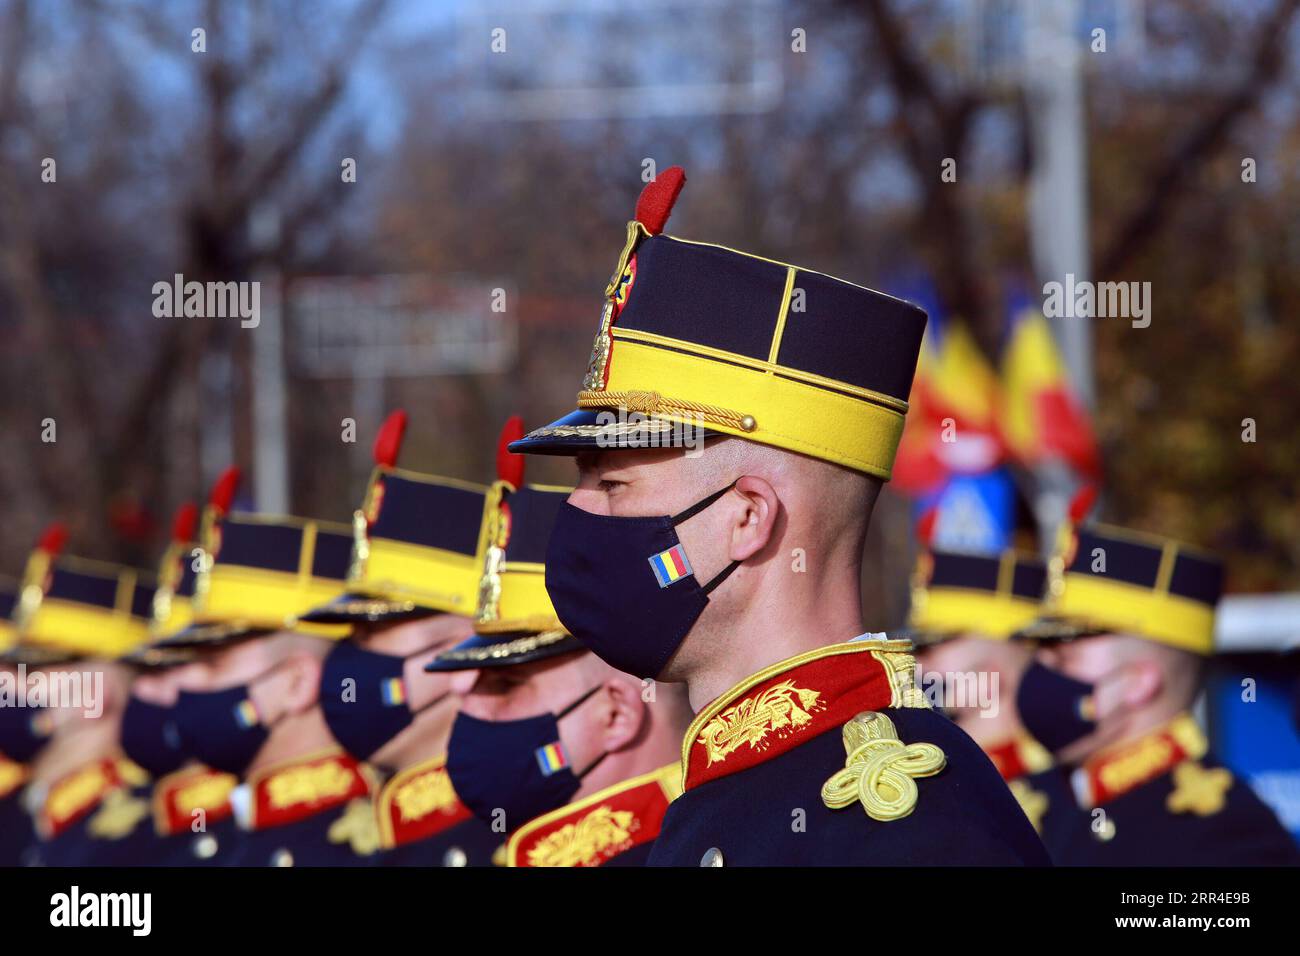 201201 -- BUKAREST, 1. Dezember 2020 -- die Ehrengarde wird auf der Feier des rumänischen Nationalfeiertags in Bukarest, Rumänien, am 1. Dezember 2020 gesehen. Rumänien hat in diesem Jahr eine vereinfachte Feierlichkeit zum Nationalfeiertag abgehalten, während der schweren Pandemie, ohne die großangelegte Militärparade und die Flugvorführungen der vergangenen Jahre. Foto von /Xinhua RUMÄNIEN-BUKAREST-NATIONALFEIERTAG GabrielxPetrescu PUBLICATIONxNOTxINxCHN Stockfoto